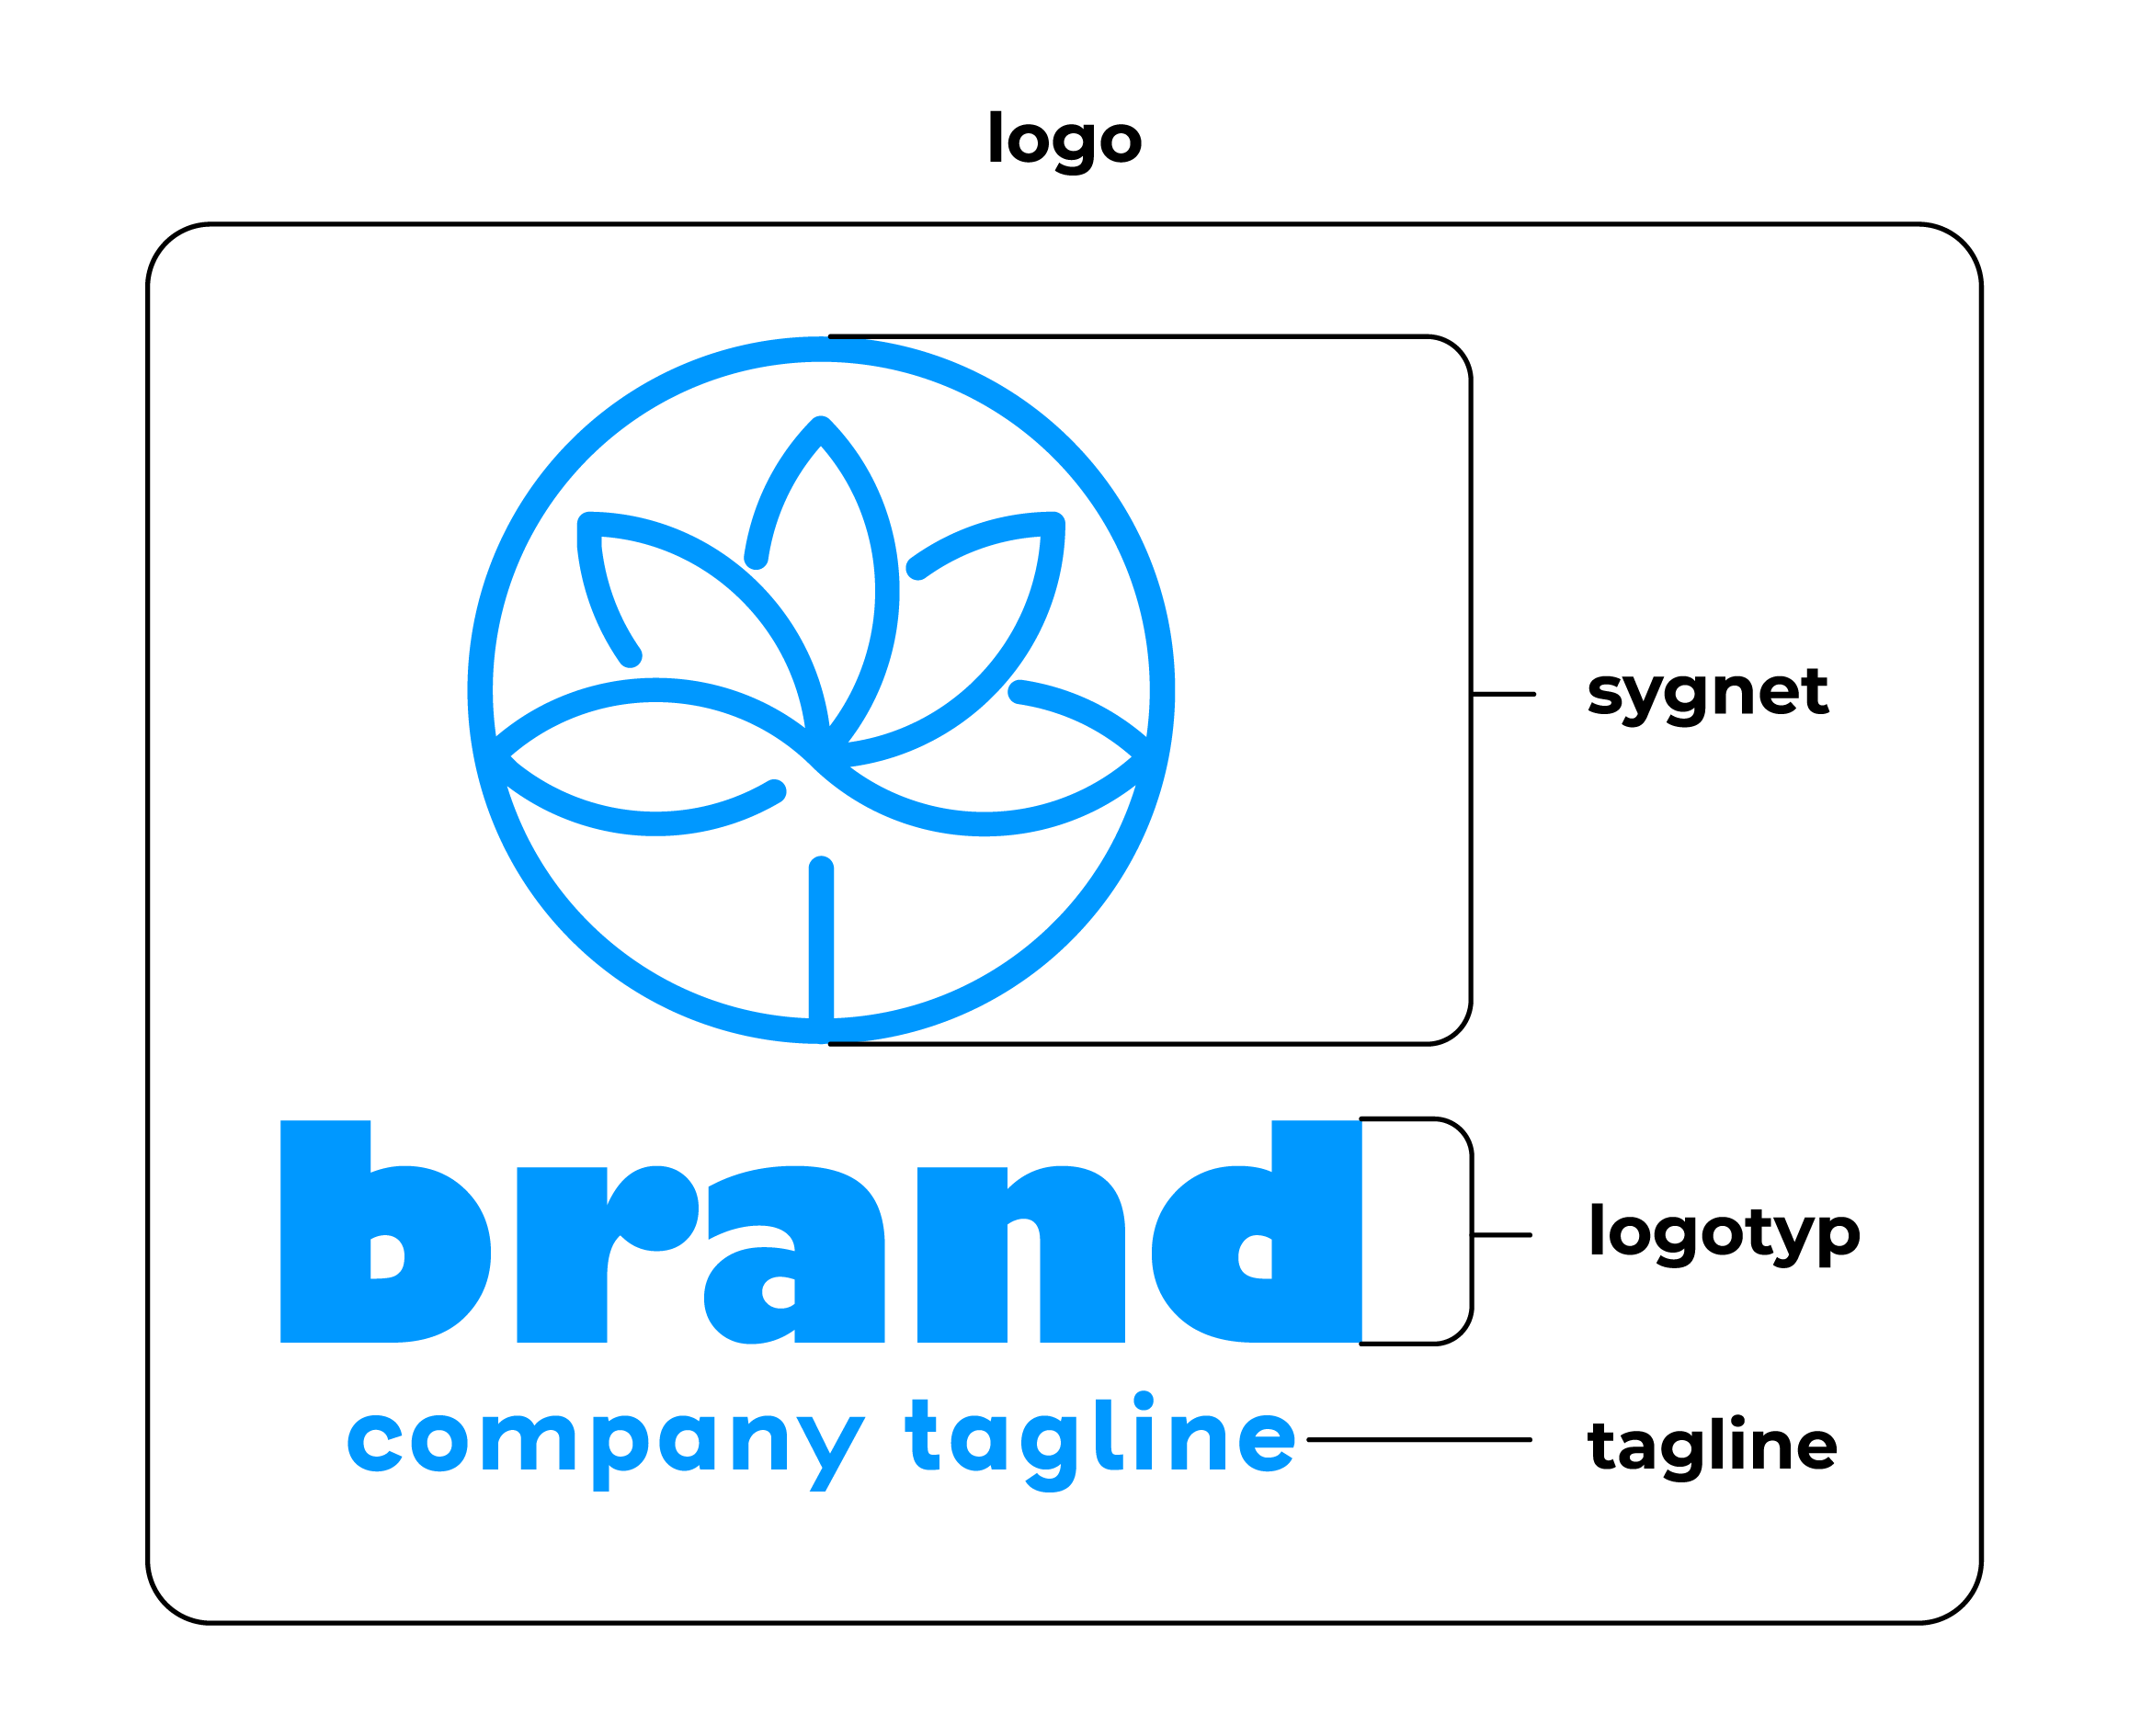 Logo składa się z sygnetu, logotypu i tagline, czyli sloganu reklamowego